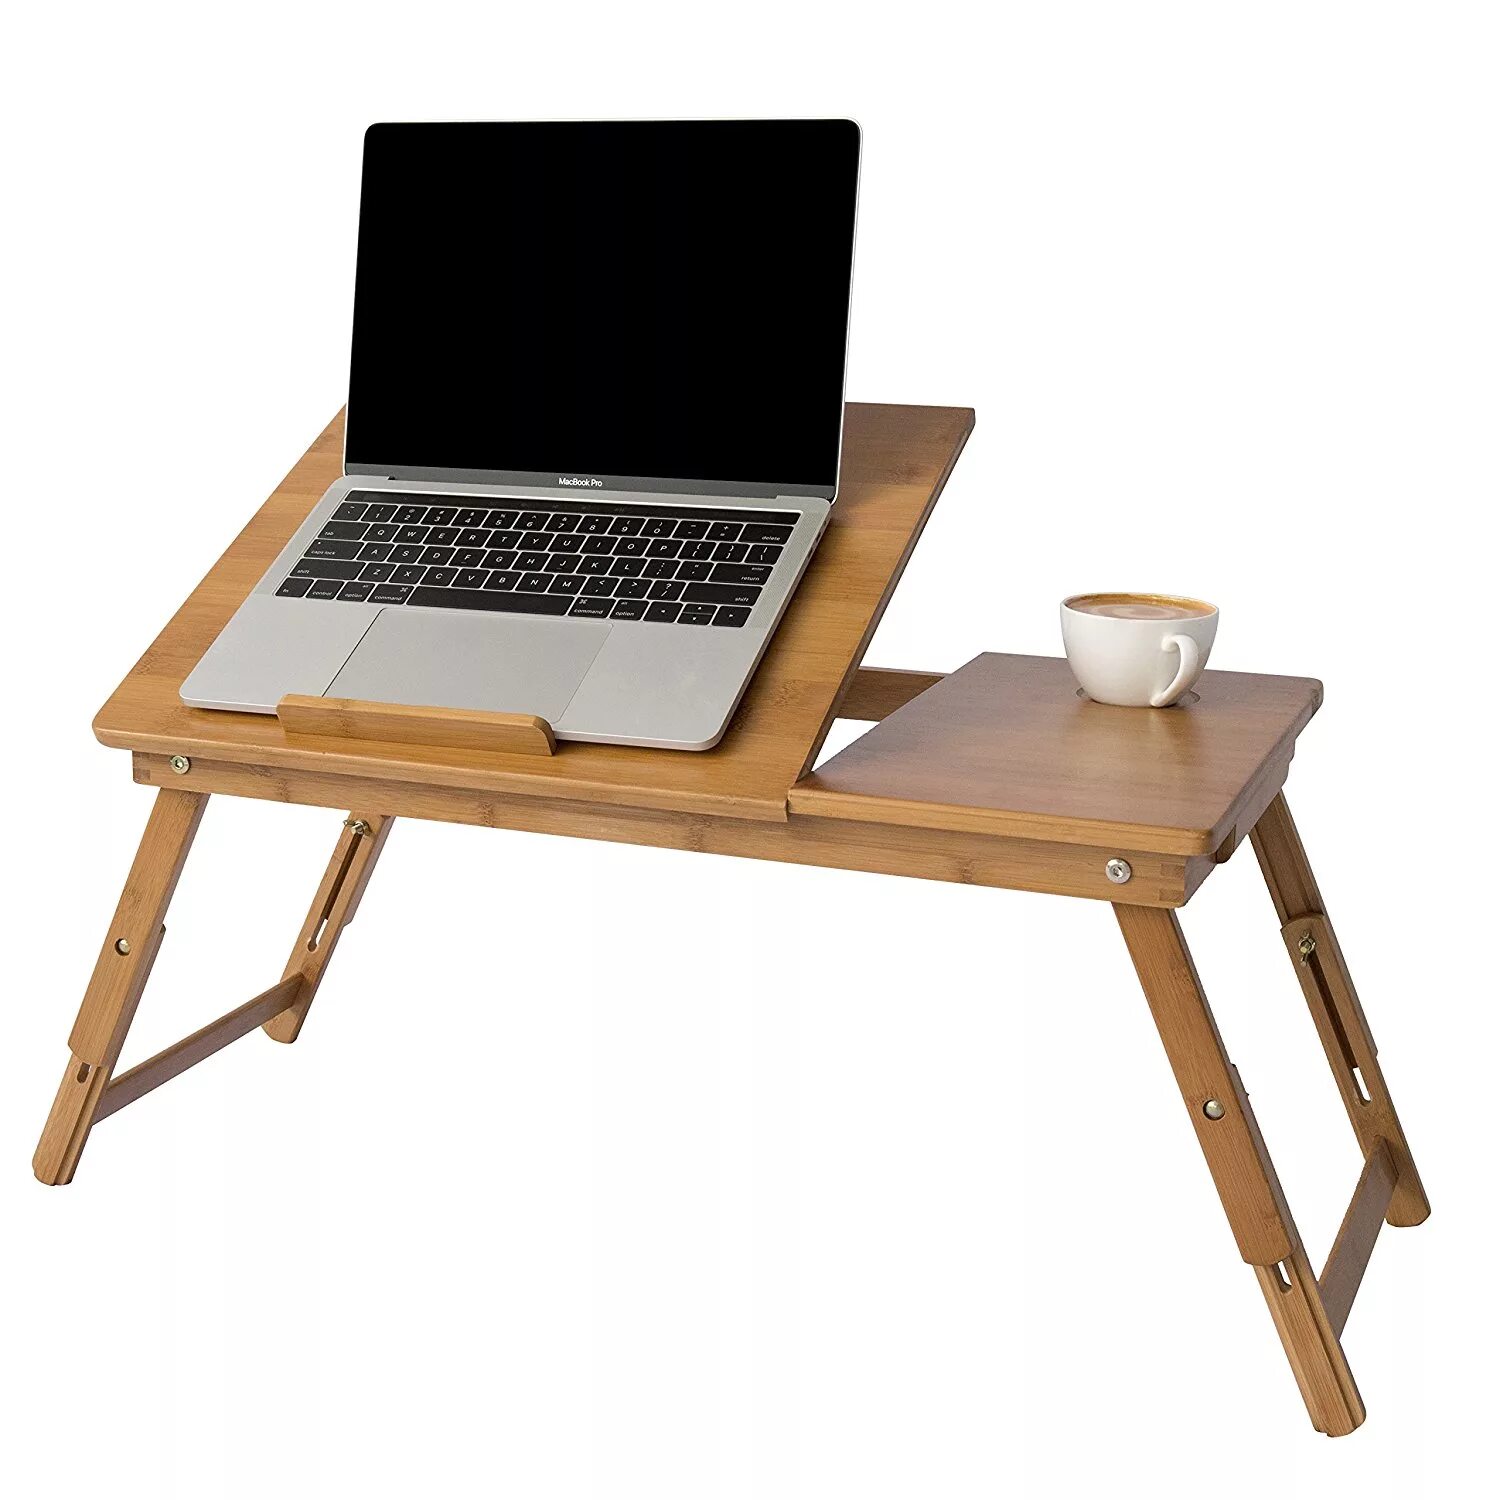 Портативный стол. Складной столик для ноутбука икеа. Eco Bamboo столик для ноутбука 70 см. Столик под ноутбук икеа. Столик для ноутбука Laptop Table Folding Table.